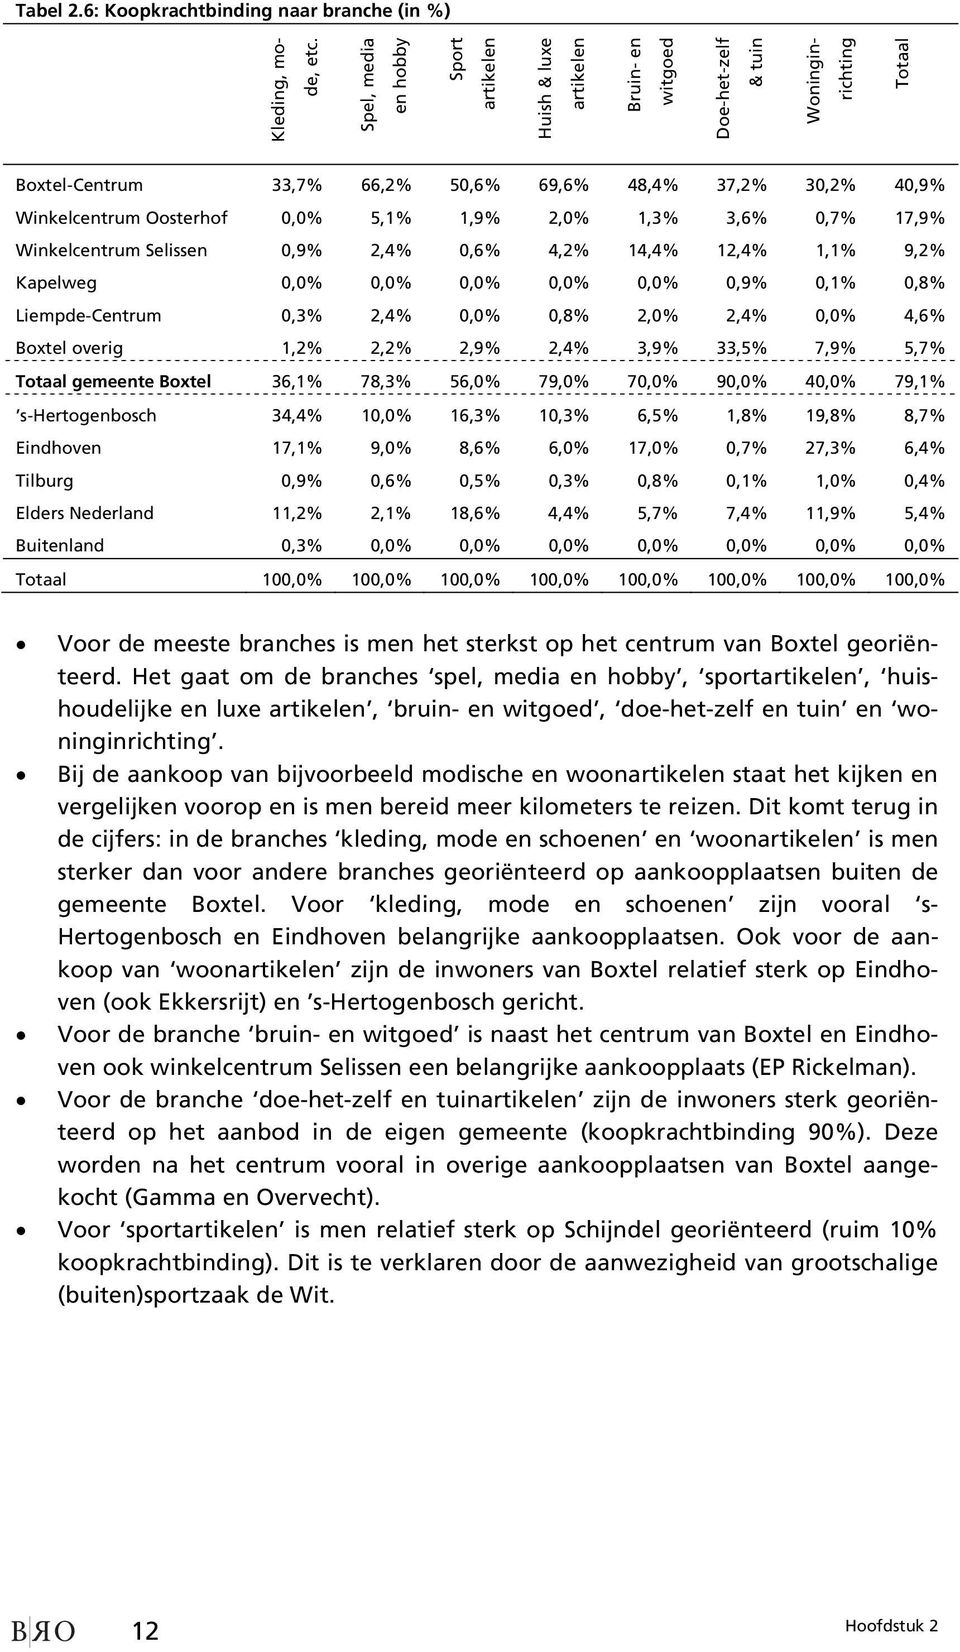 Oosterhof 0,0% 5,1% 1,9% 2,0% 1,3% 3,6% 0,7% 17,9% Winkelcentrum Selissen 0,9% 2,4% 0,6% 4,2% 14,4% 12,4% 1,1% 9,2% Kapelweg 0,0% 0,0% 0,0% 0,0% 0,0% 0,9% 0,1% 0,8% Liempde-Centrum 0,3% 2,4% 0,0%